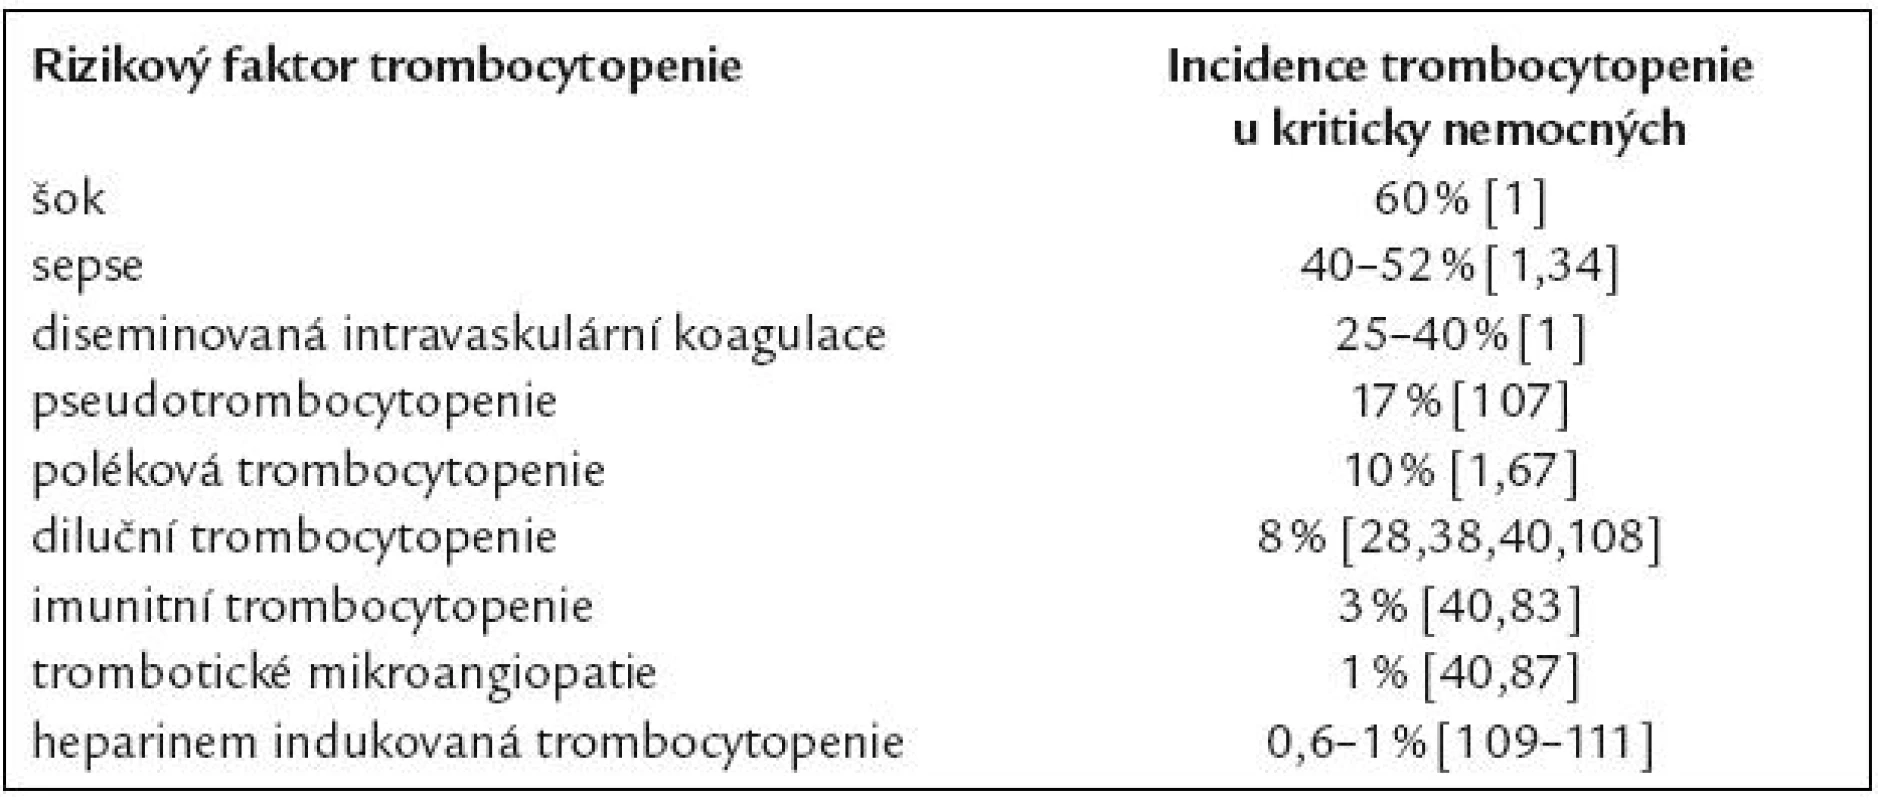 Nejvýznamnější příčiny trombocytopenie u kriticky nemocných.